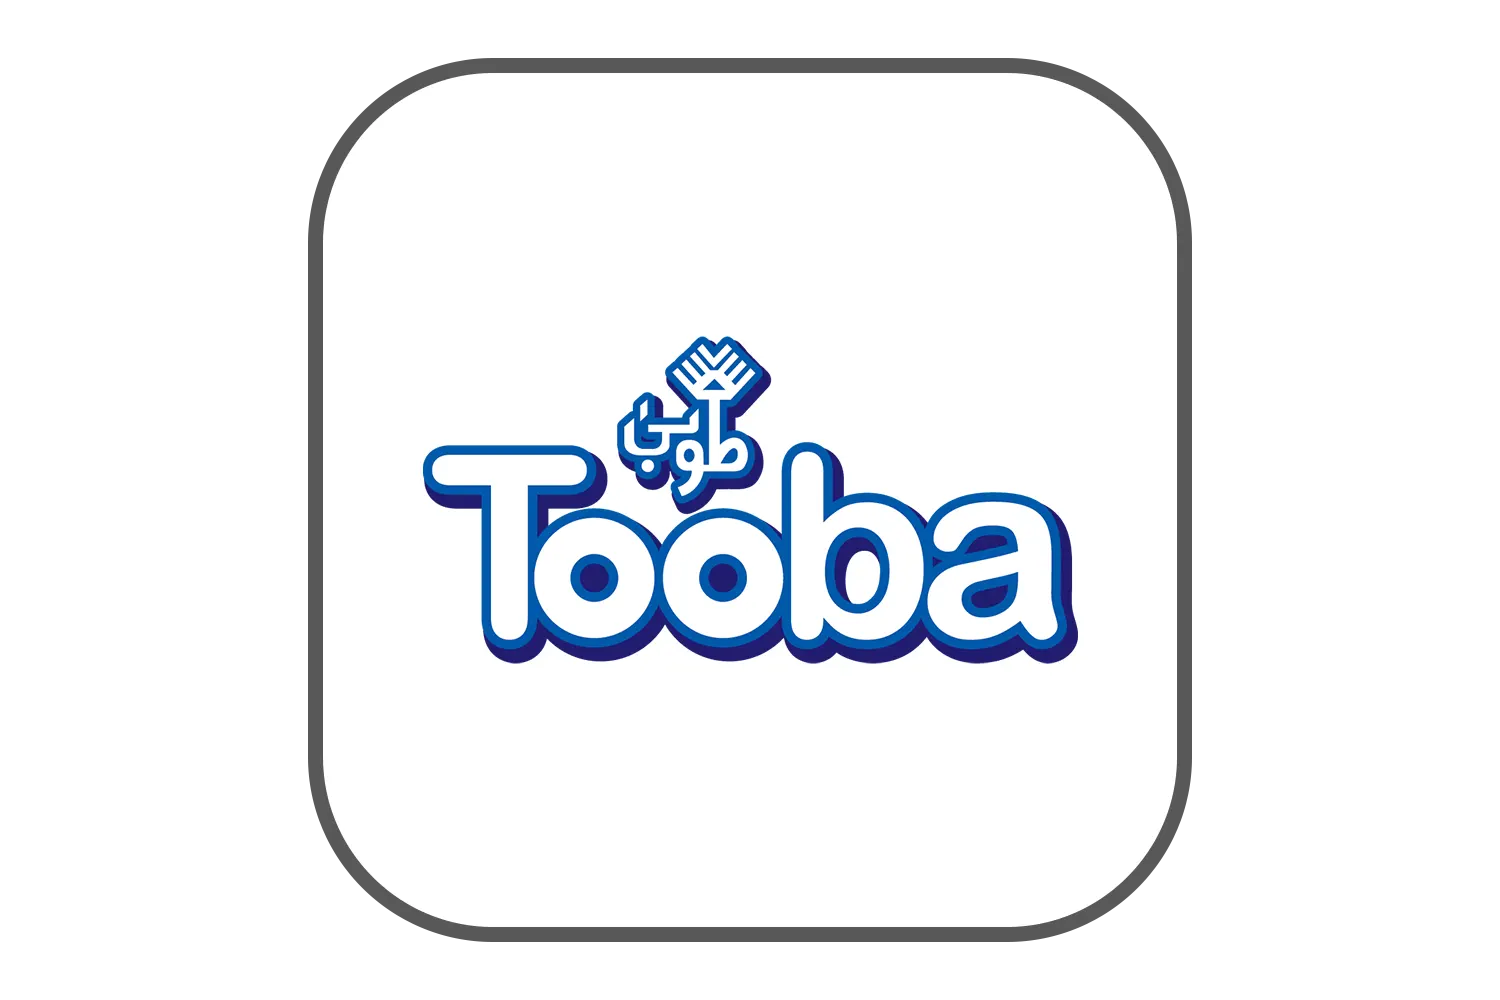 tooba